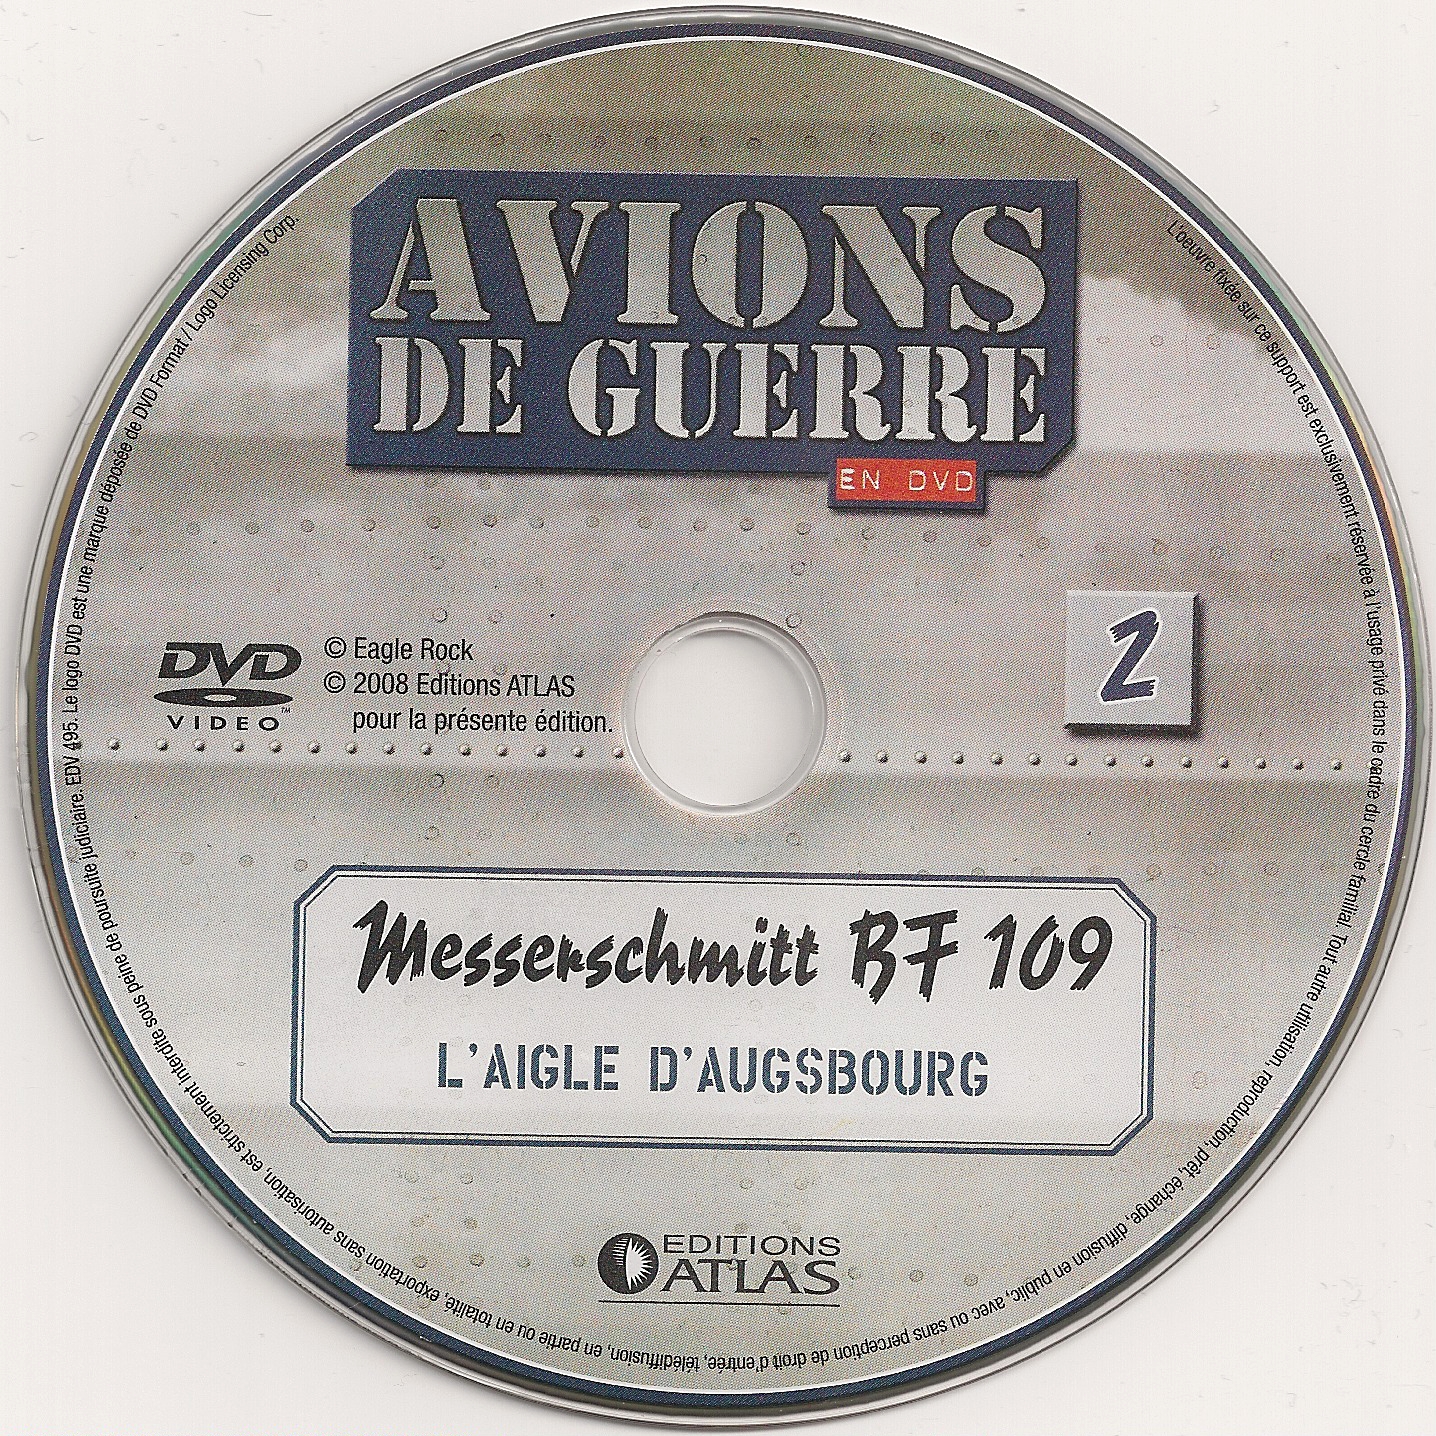 Avions de guerre en DVD vol 02